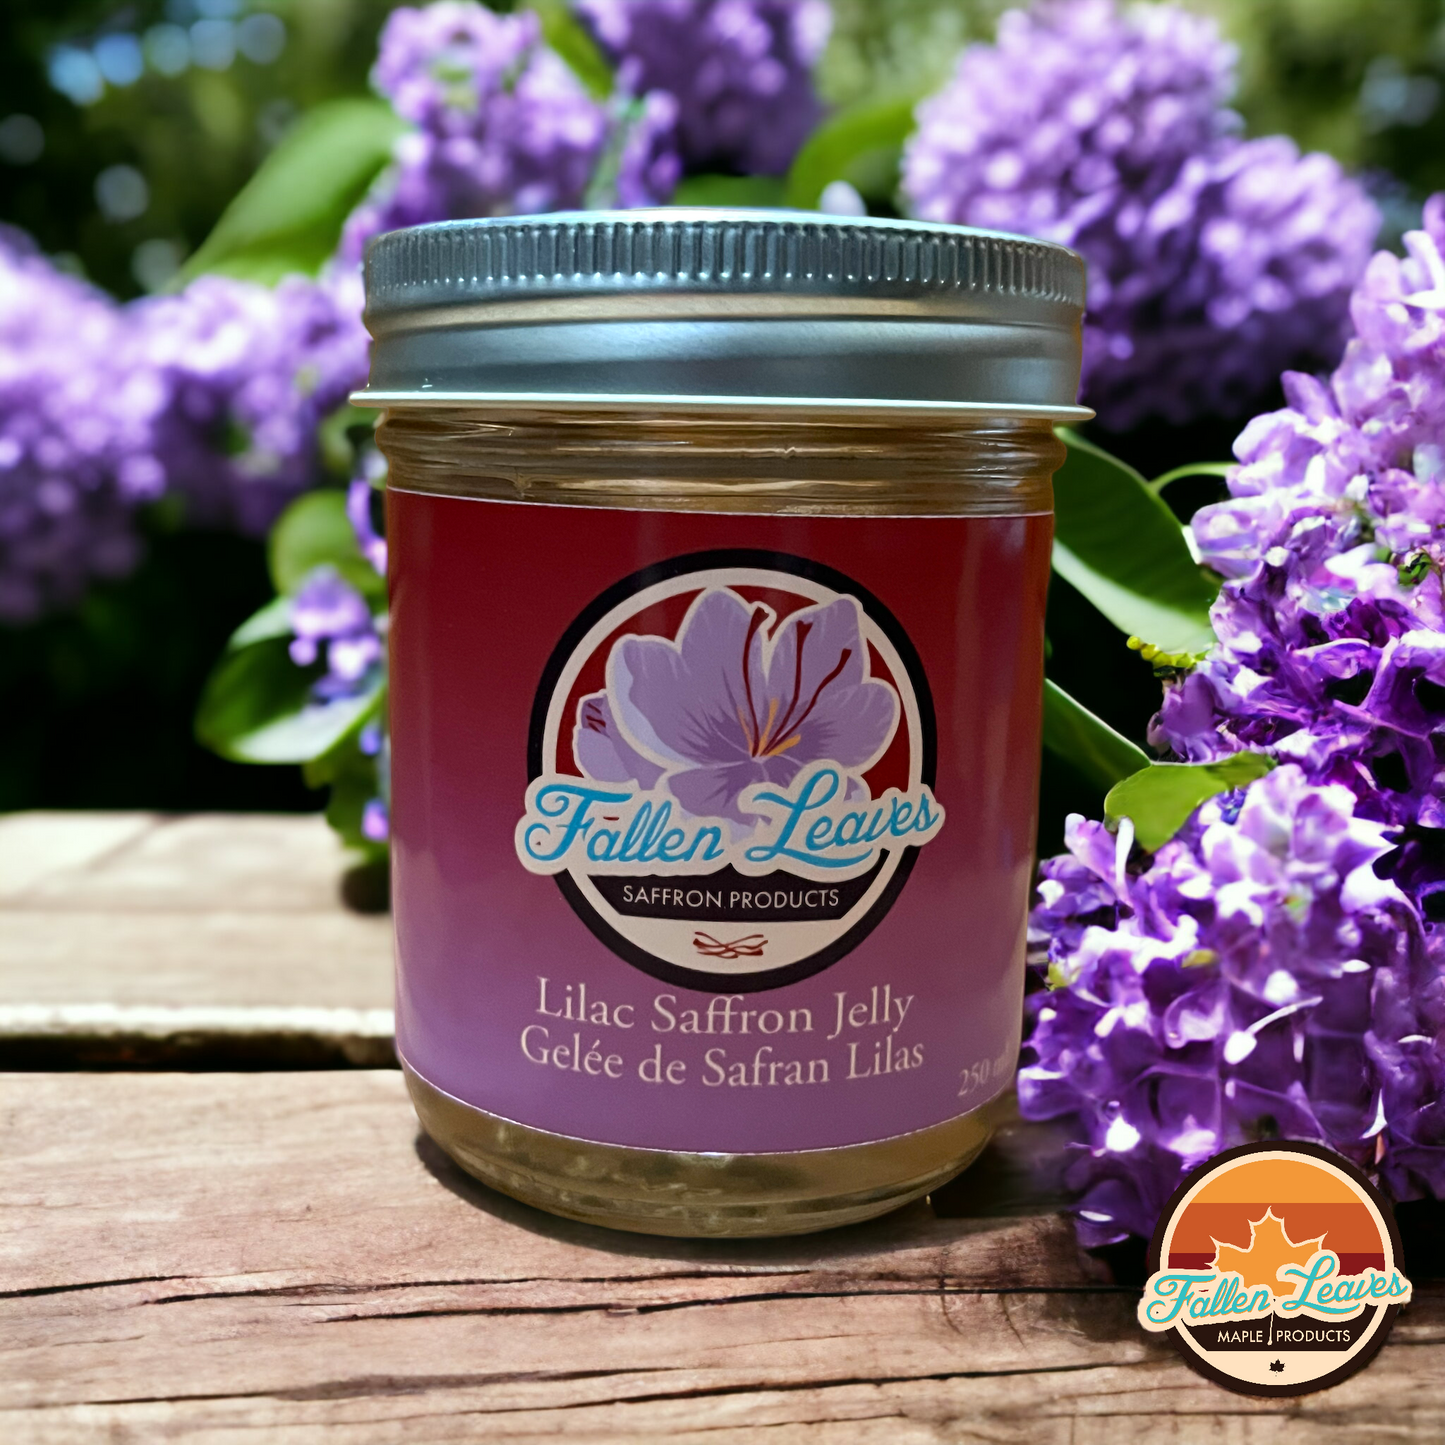 Lilac Saffron Jelly